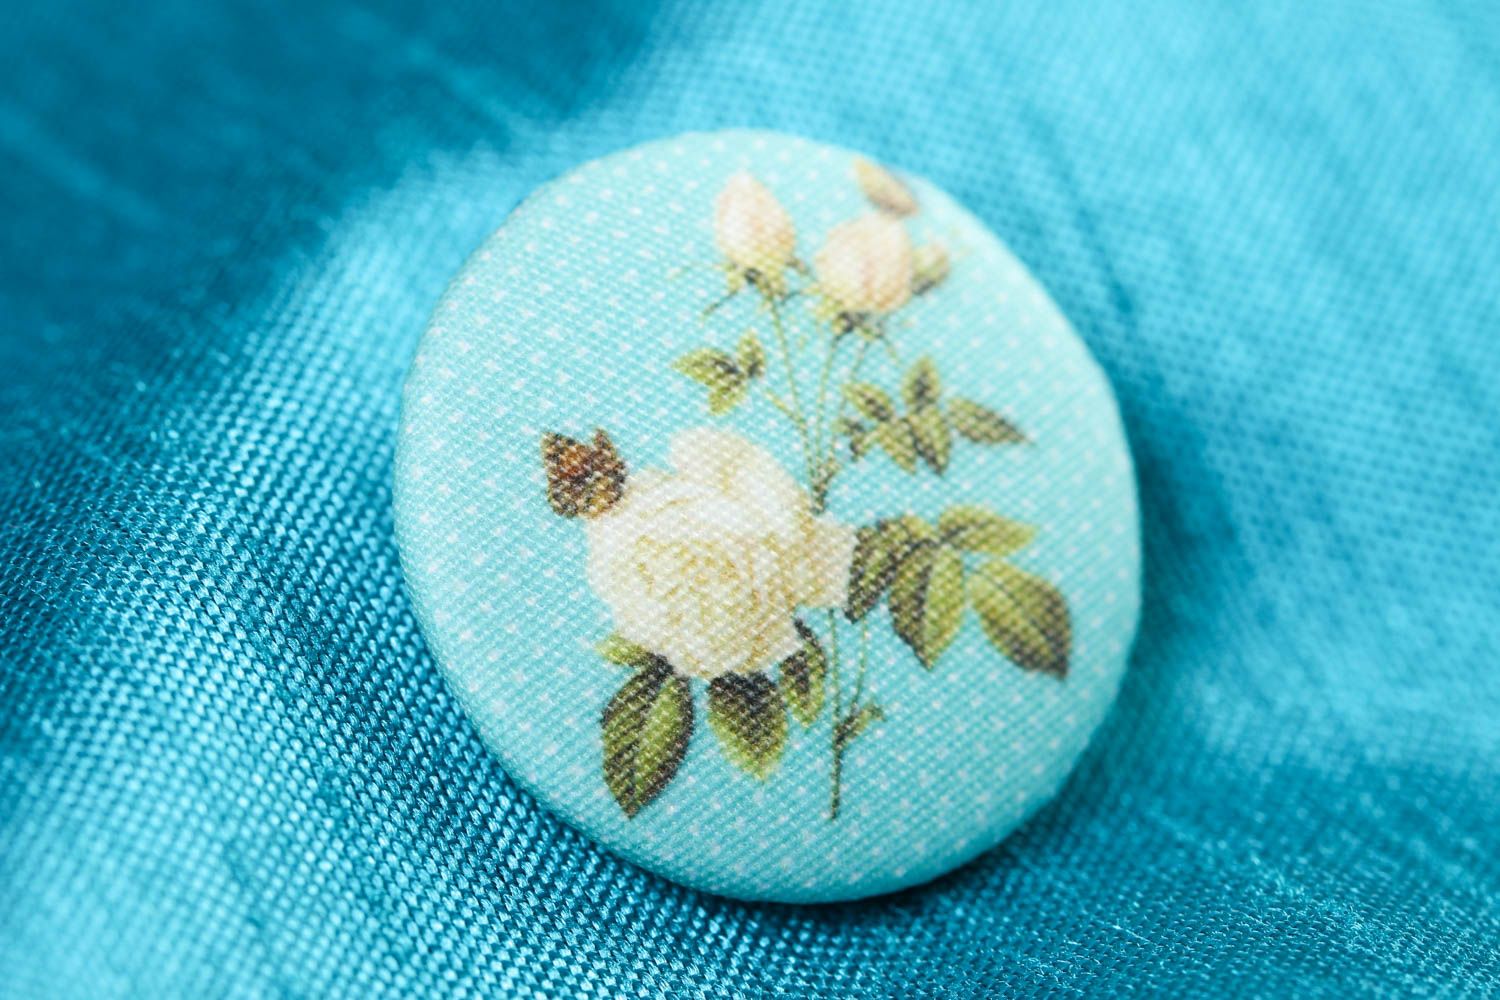 Красивая пуговица хэнд мэйд аксессуар для одежды фурнитура пуговица с цветами фото 1